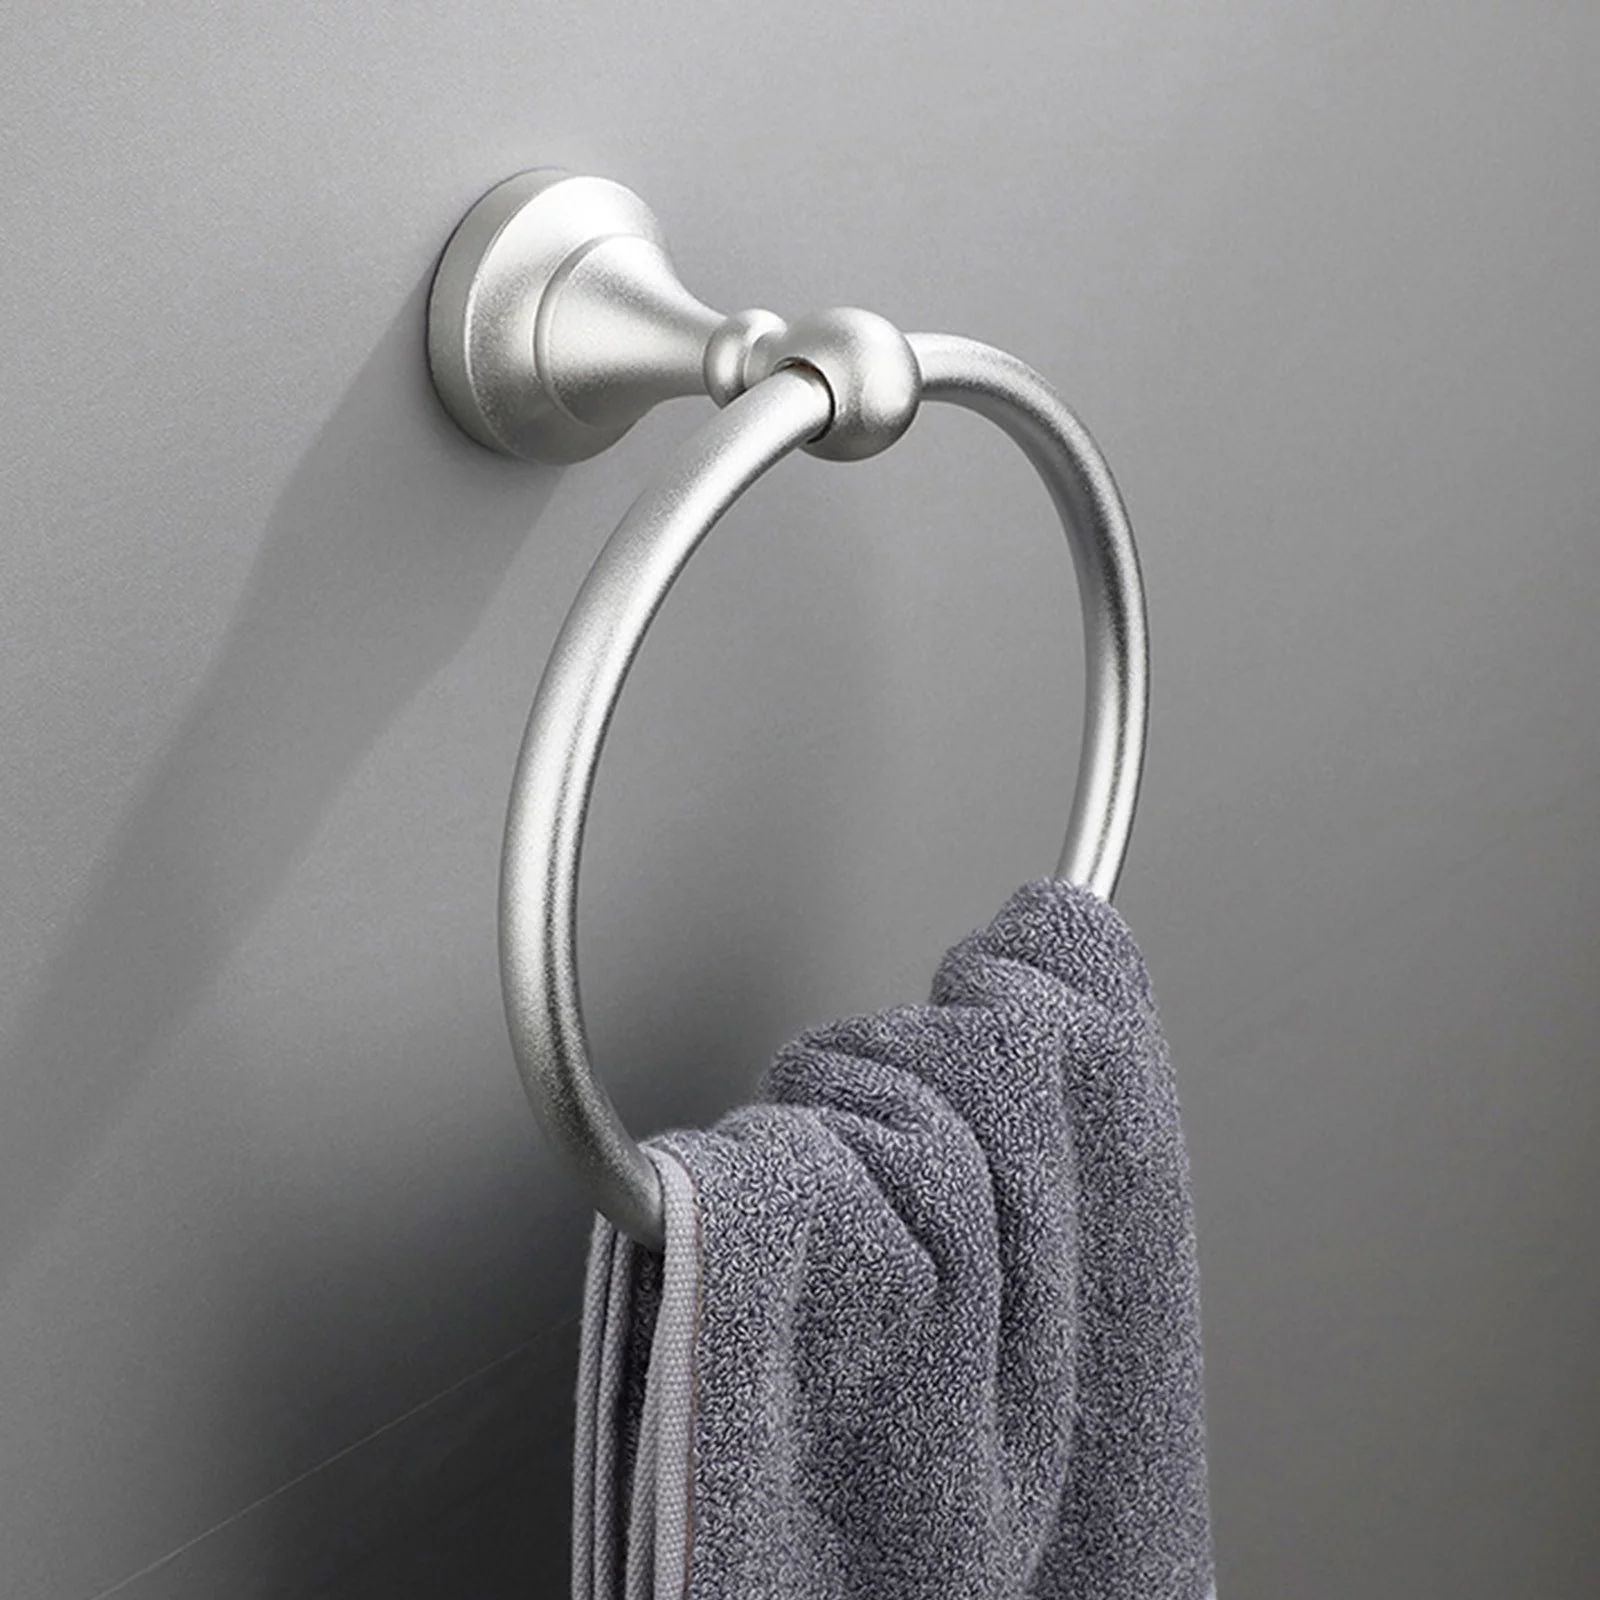 SDJMa Matte Black Towel Ring Hand Towel Holder for Bathroom, Kitchen Bath Towel Holder Hangers He... | Walmart (US)